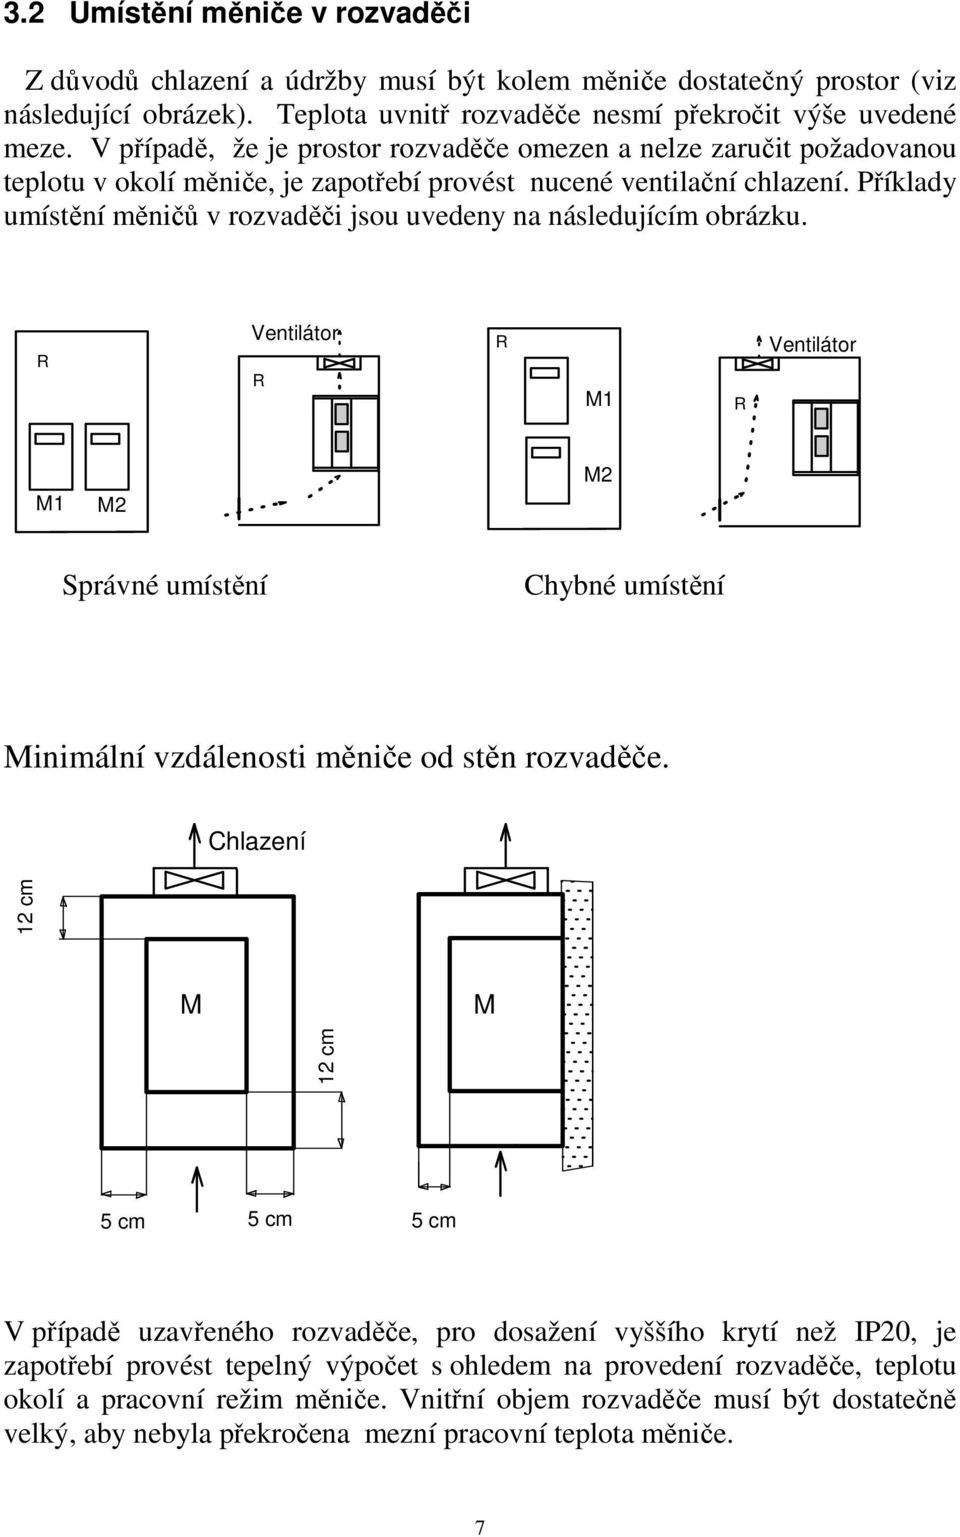 Příklady umístění měničů v rozvaděči jsou uvedeny na následujícím obrázku. R Ventilátor R R M1 R Ventilátor M1 M2 M2 Správné umístění Chybné umístění Minimální vzdálenosti měniče od stěn rozvaděče.